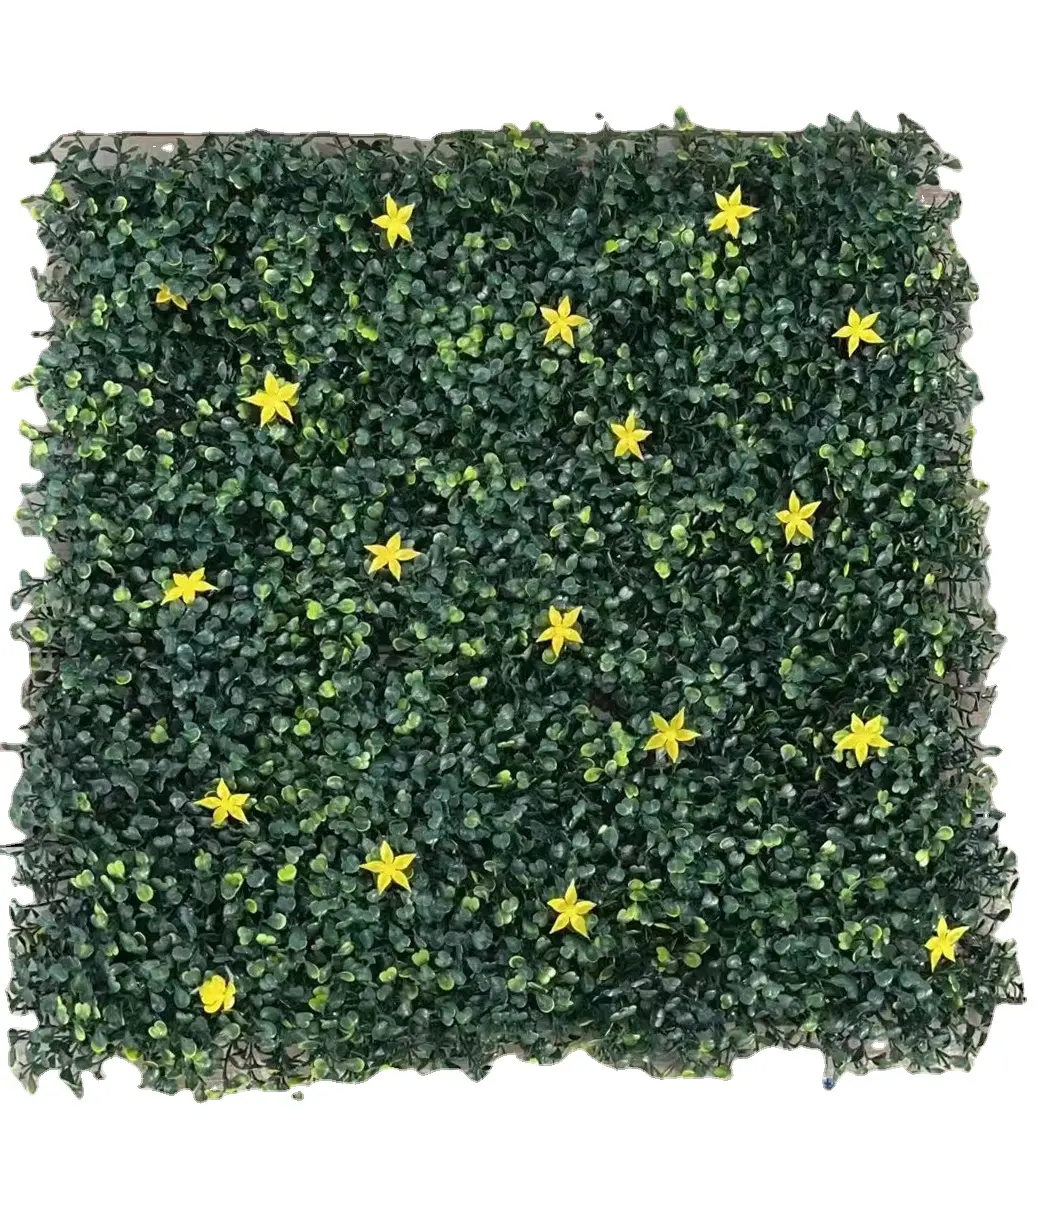 Panel kayu kotak pagar buatan plastik Anti-UV tanaman hijau dinding daun buatan taman vertikal untuk dekorasi dalam ruangan luar ruangan